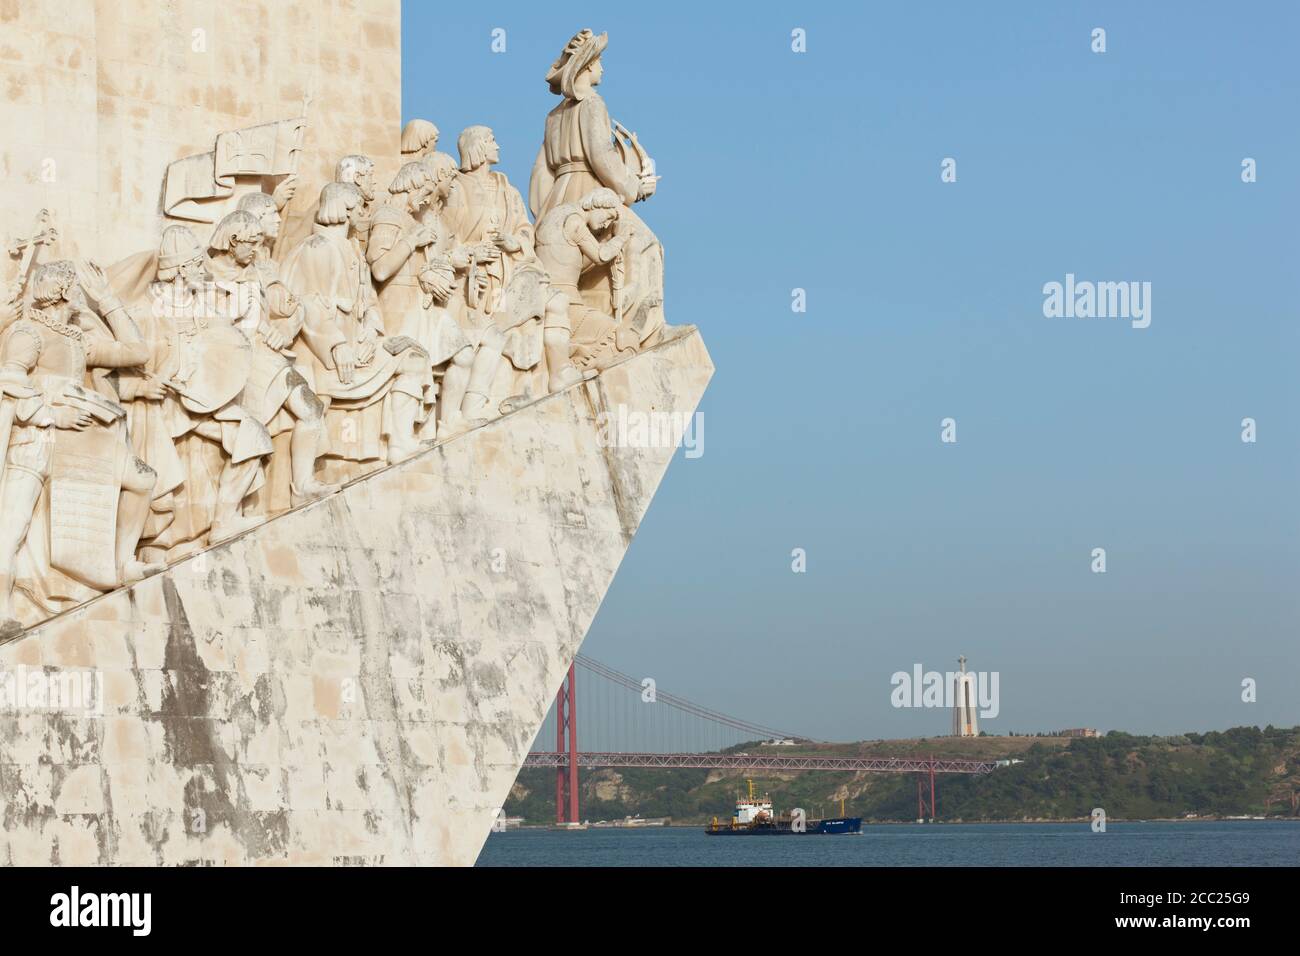 Europa, Portugal, Lissabon, Belem, Padrao dos Descobrimentos, Ansicht der monumentalen Skulptur der portugiesischen Seefahrt am Fluss Tejo Stockfoto